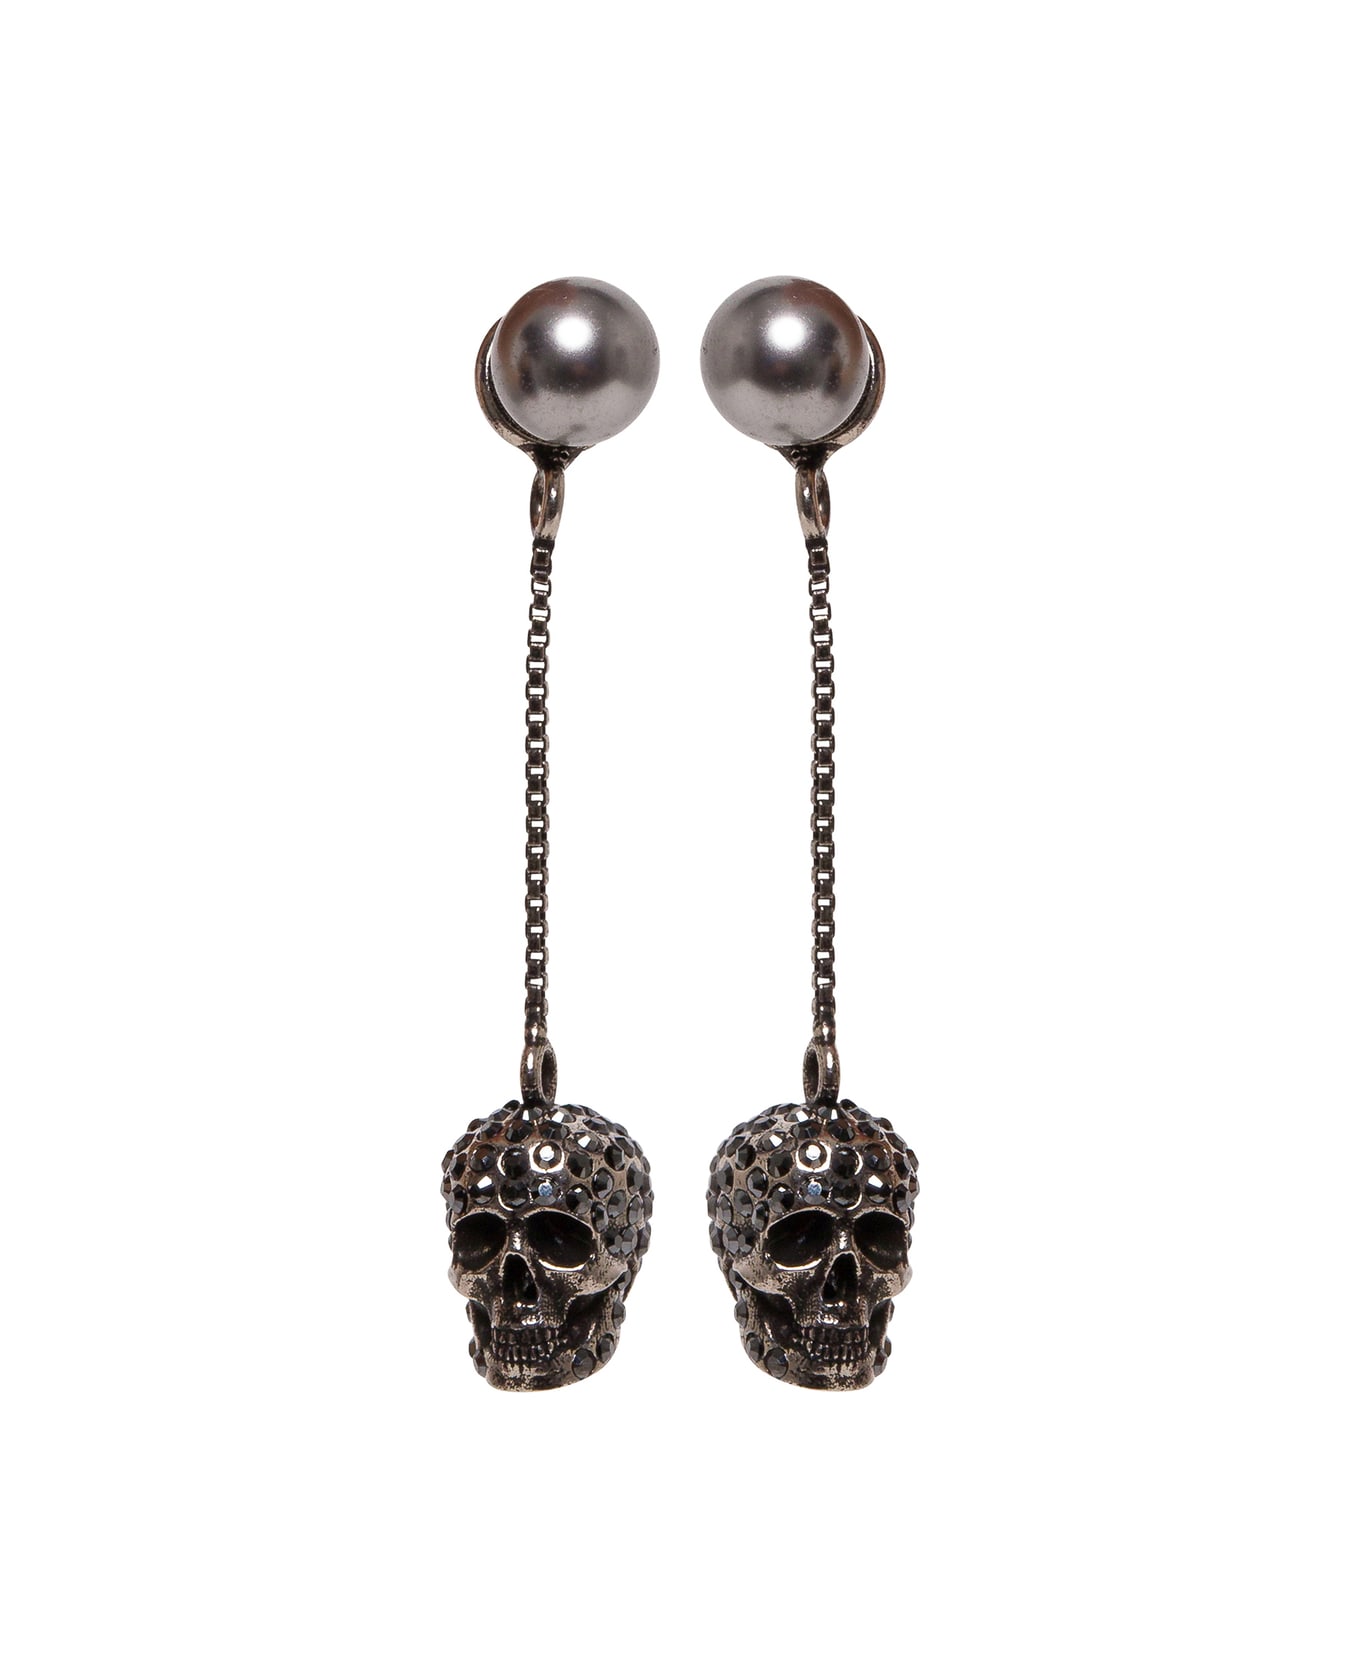 Alexander McQueen Woman's Skull Silver Colored Brass Earrings - Metallic